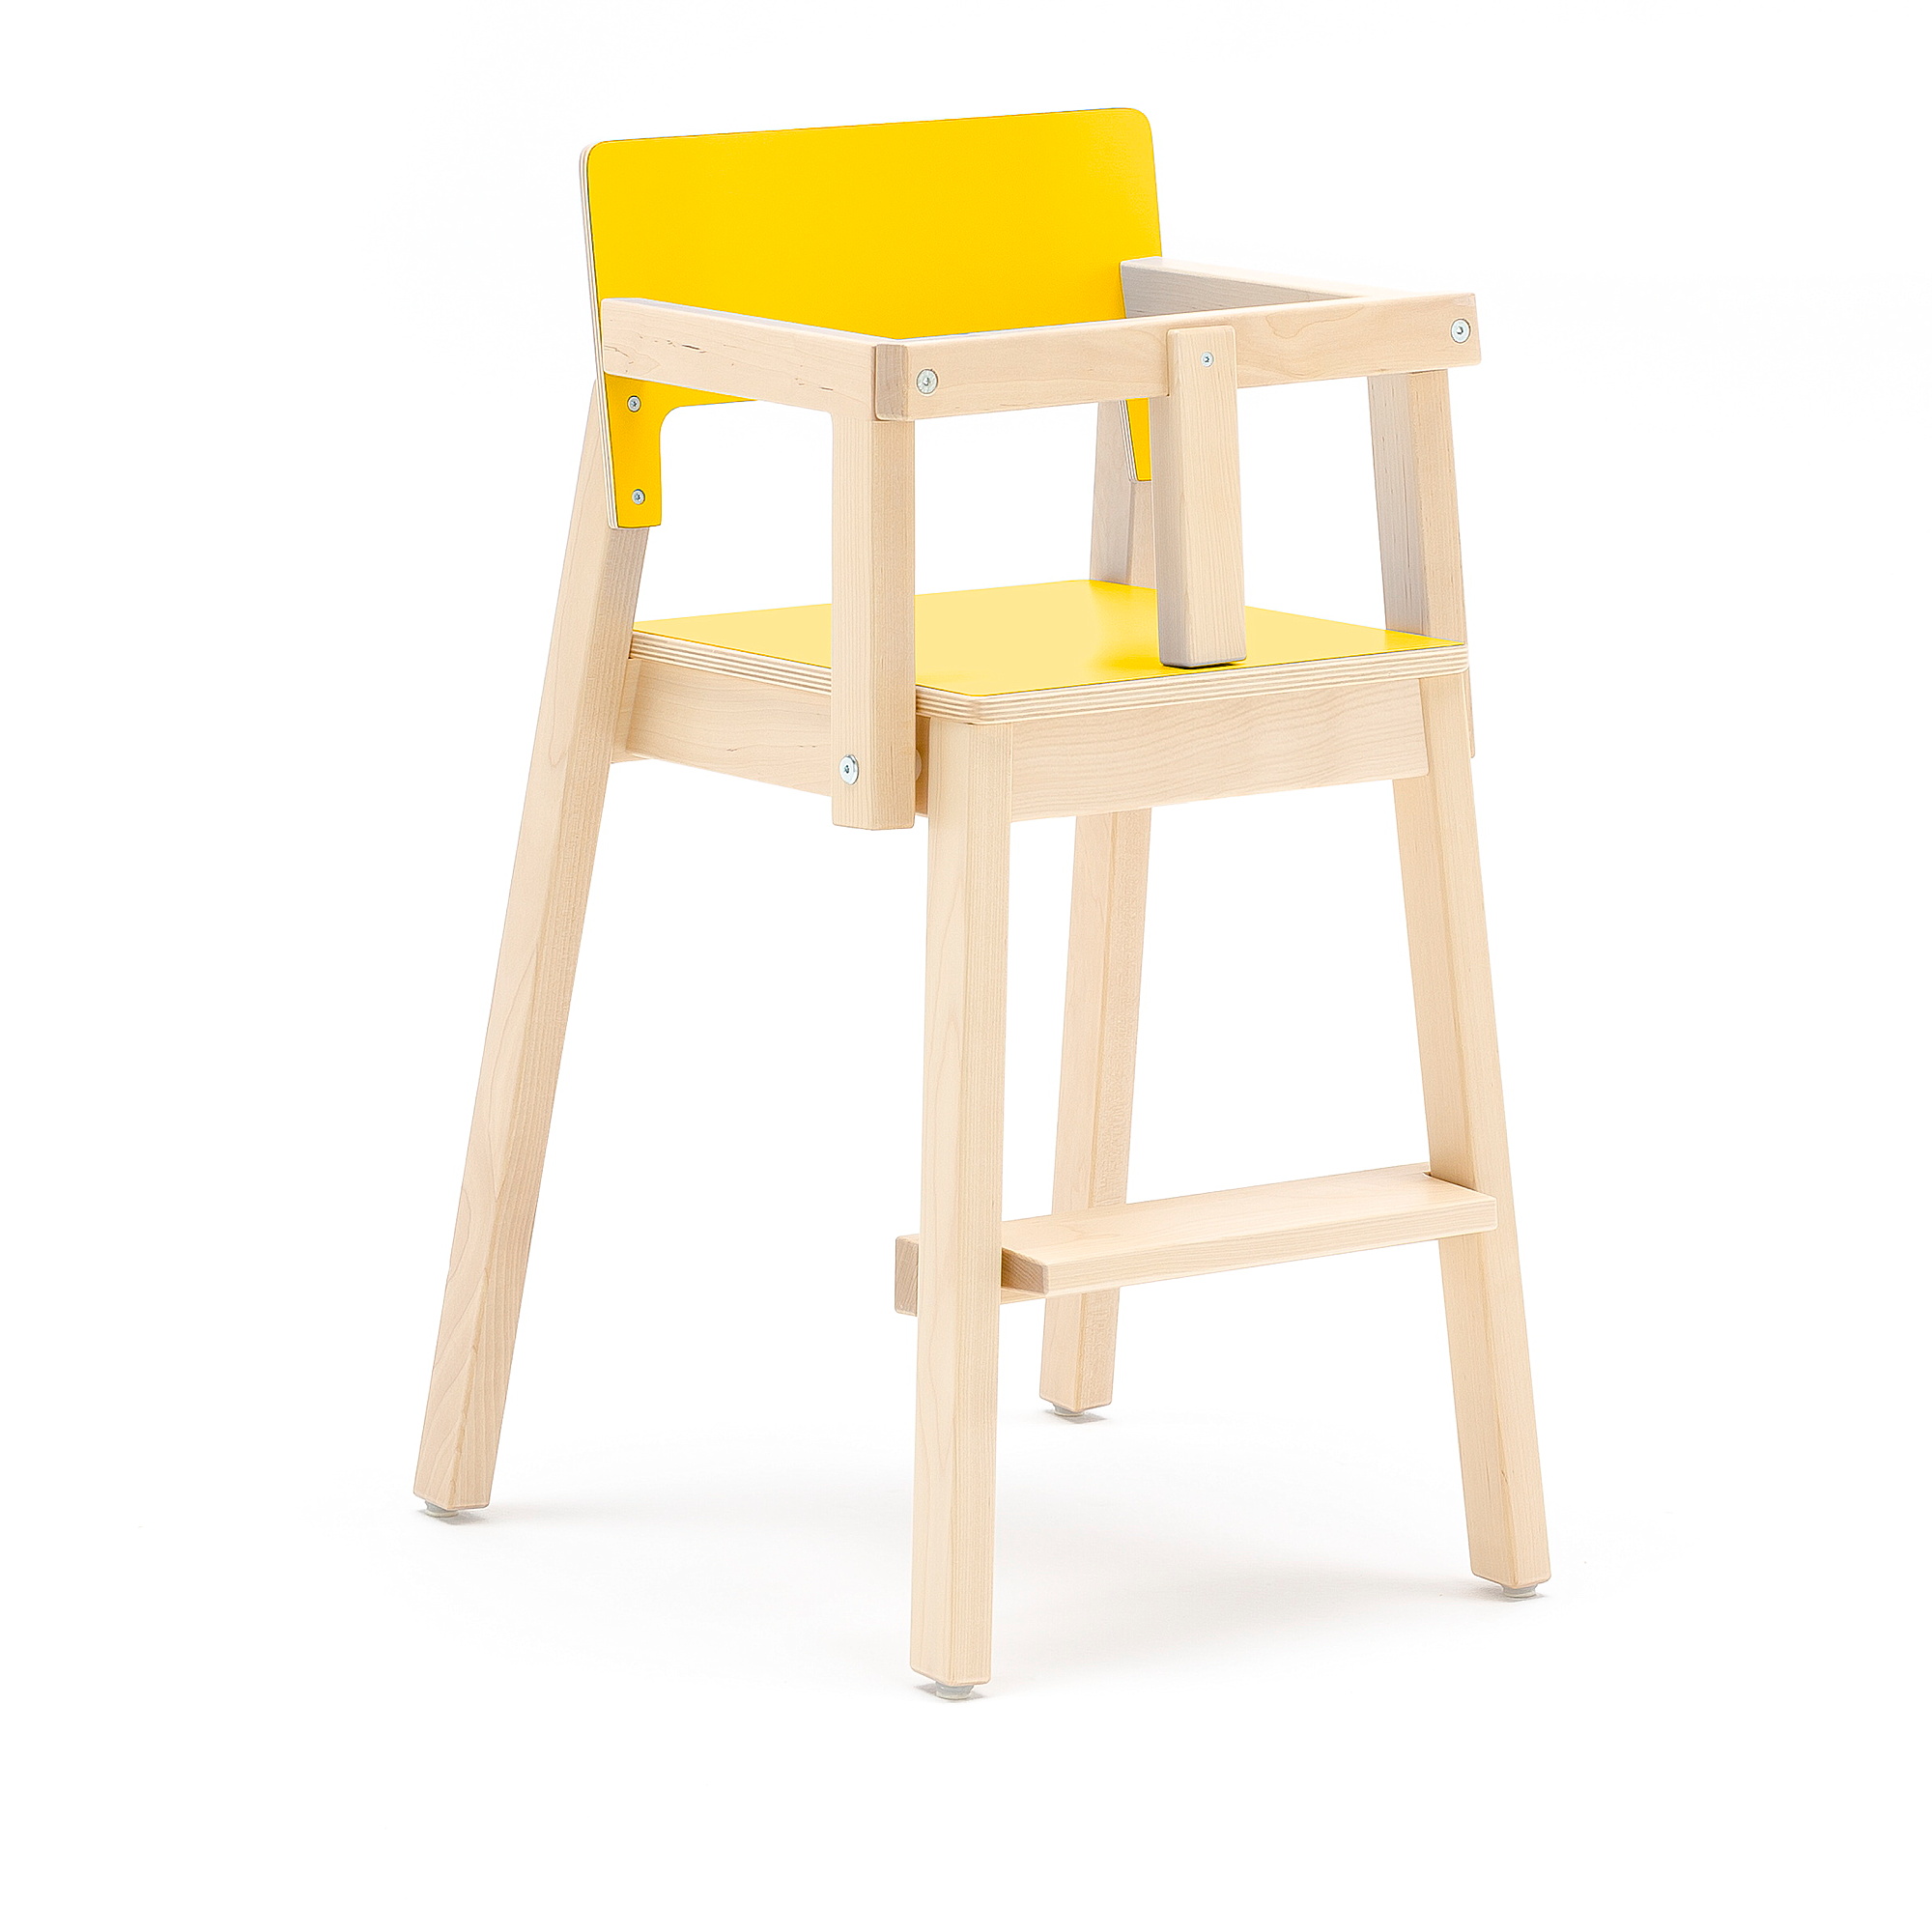 Vysoká dětská židle LOVE, s područkami a zábranou, výška 500 mm, bříza, žlutá